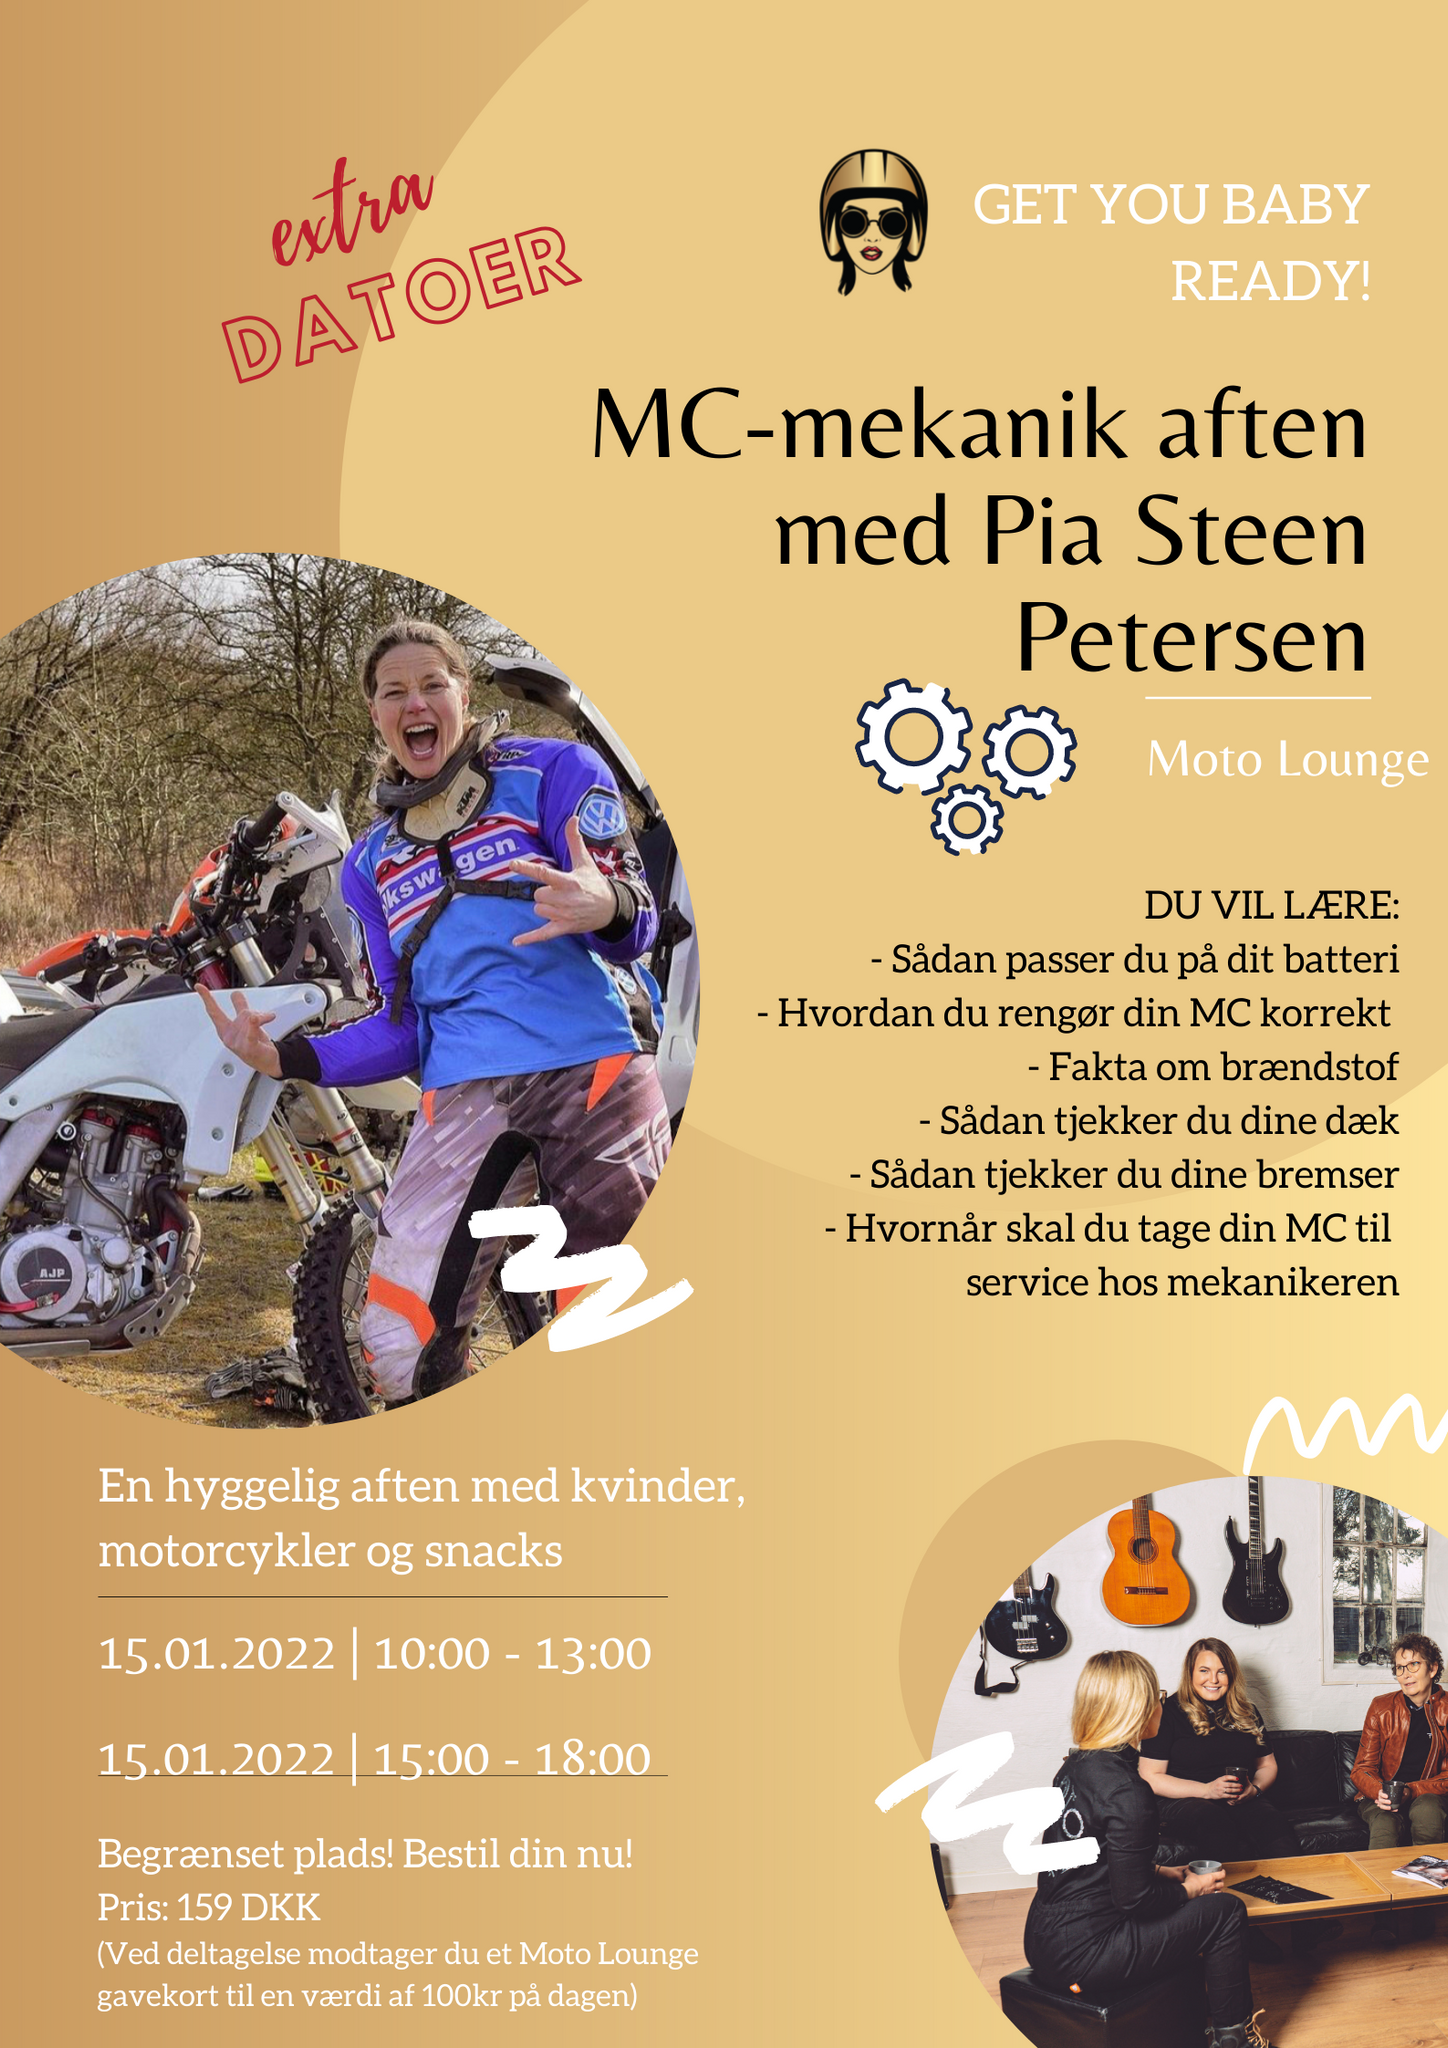 MC-mekanik aften med Pia Steen Petersen - 15.01